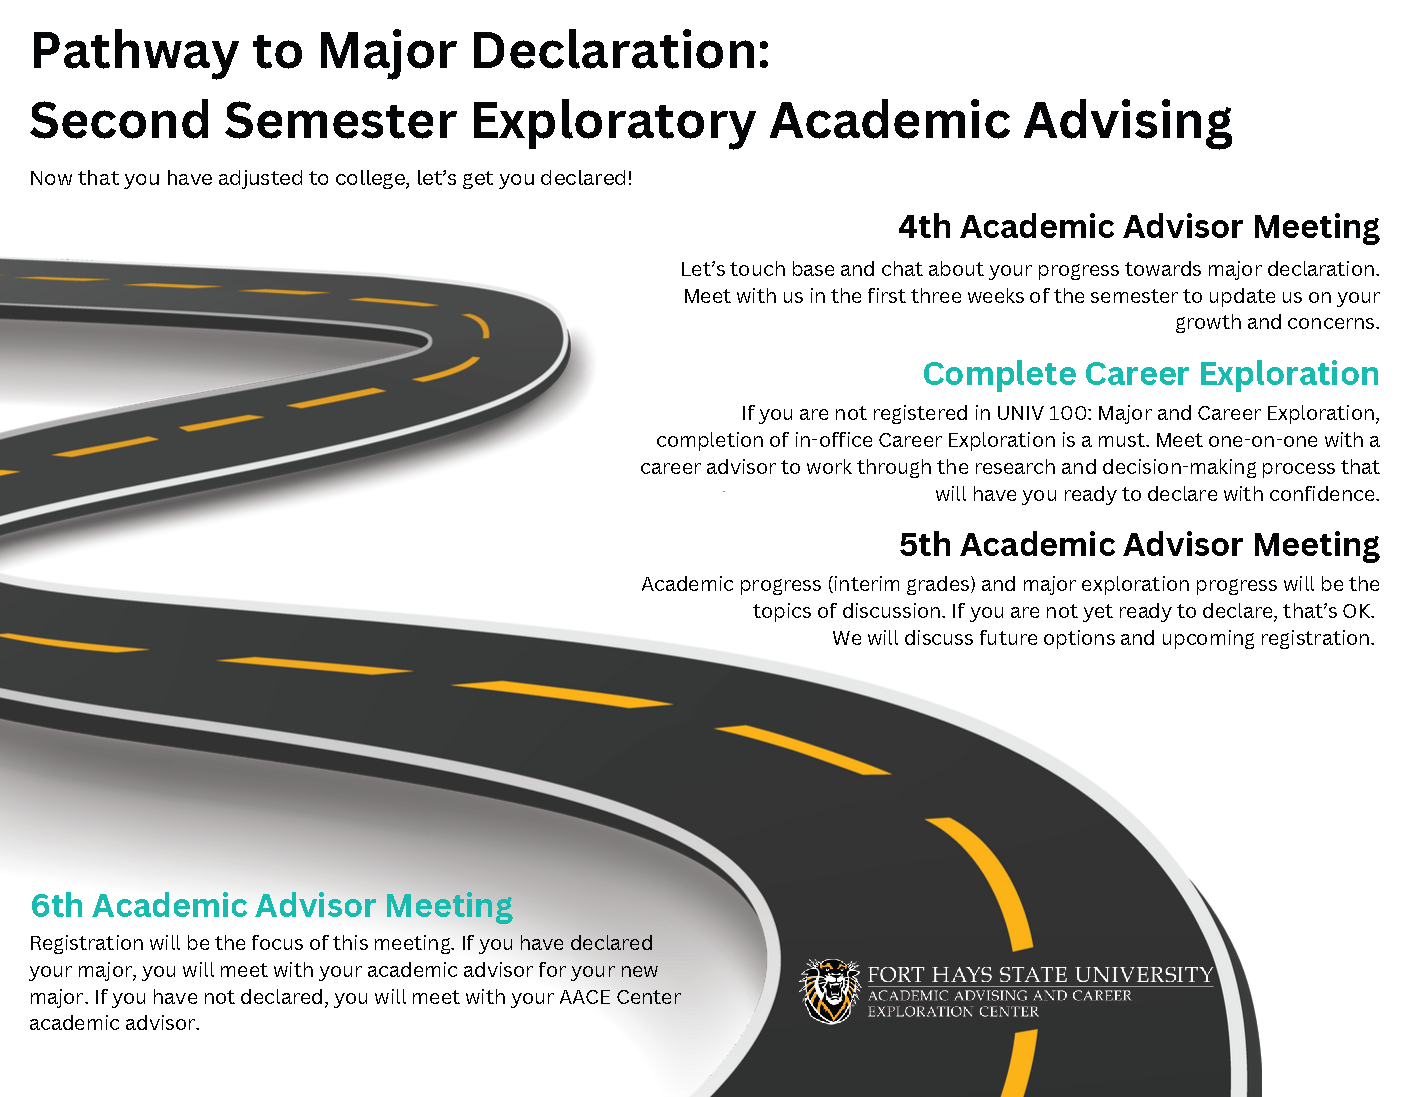 u24-pathway-to-major-declaration-2.png